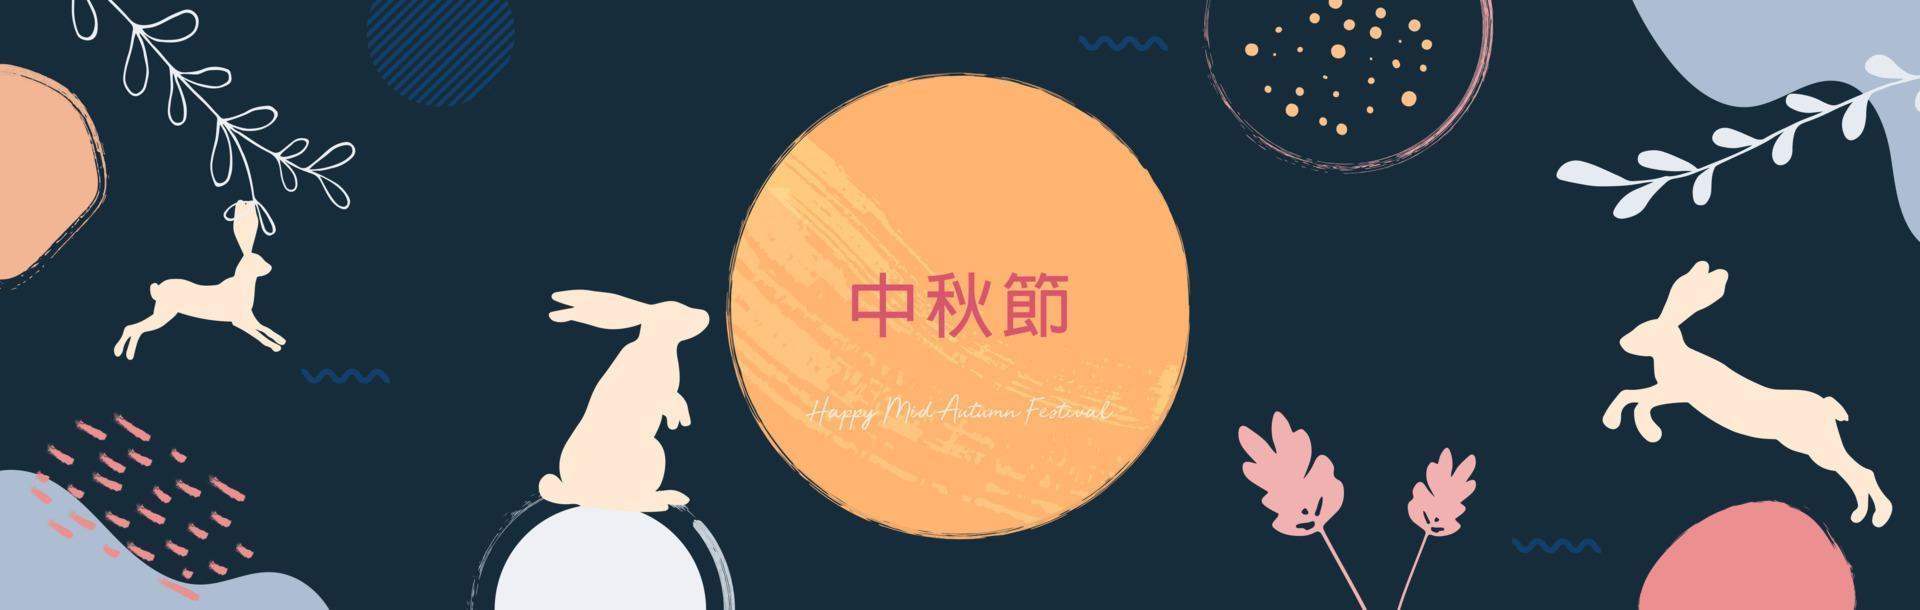 midhöstfestivalen trendig design med målad måne, månkaka, söta kaniner, växter och prickar, färgstänk på mörkblå bakgrund. översättning från kinesisk-mid-höstfestivalen. vektor illustration